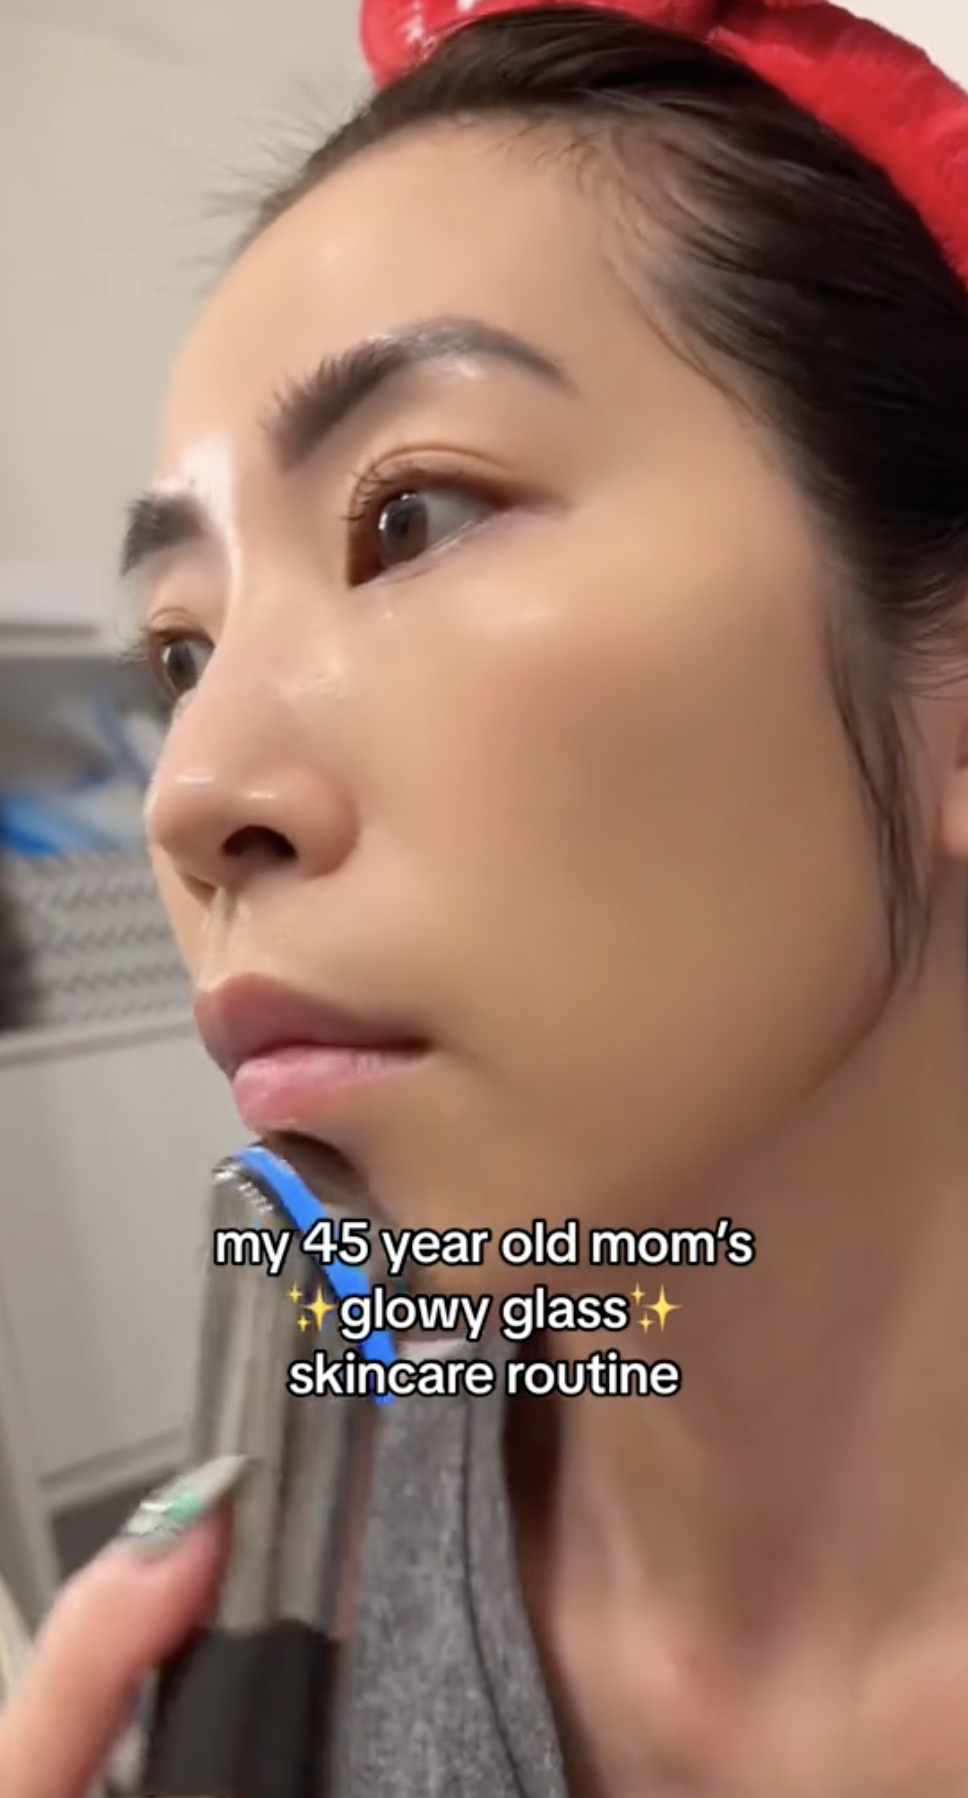 Sie erklärte, dass ihre Mutter ihre Produkte mit einem Gesichtsgerät kreisförmig in ihre Haut eingearbeitet habe